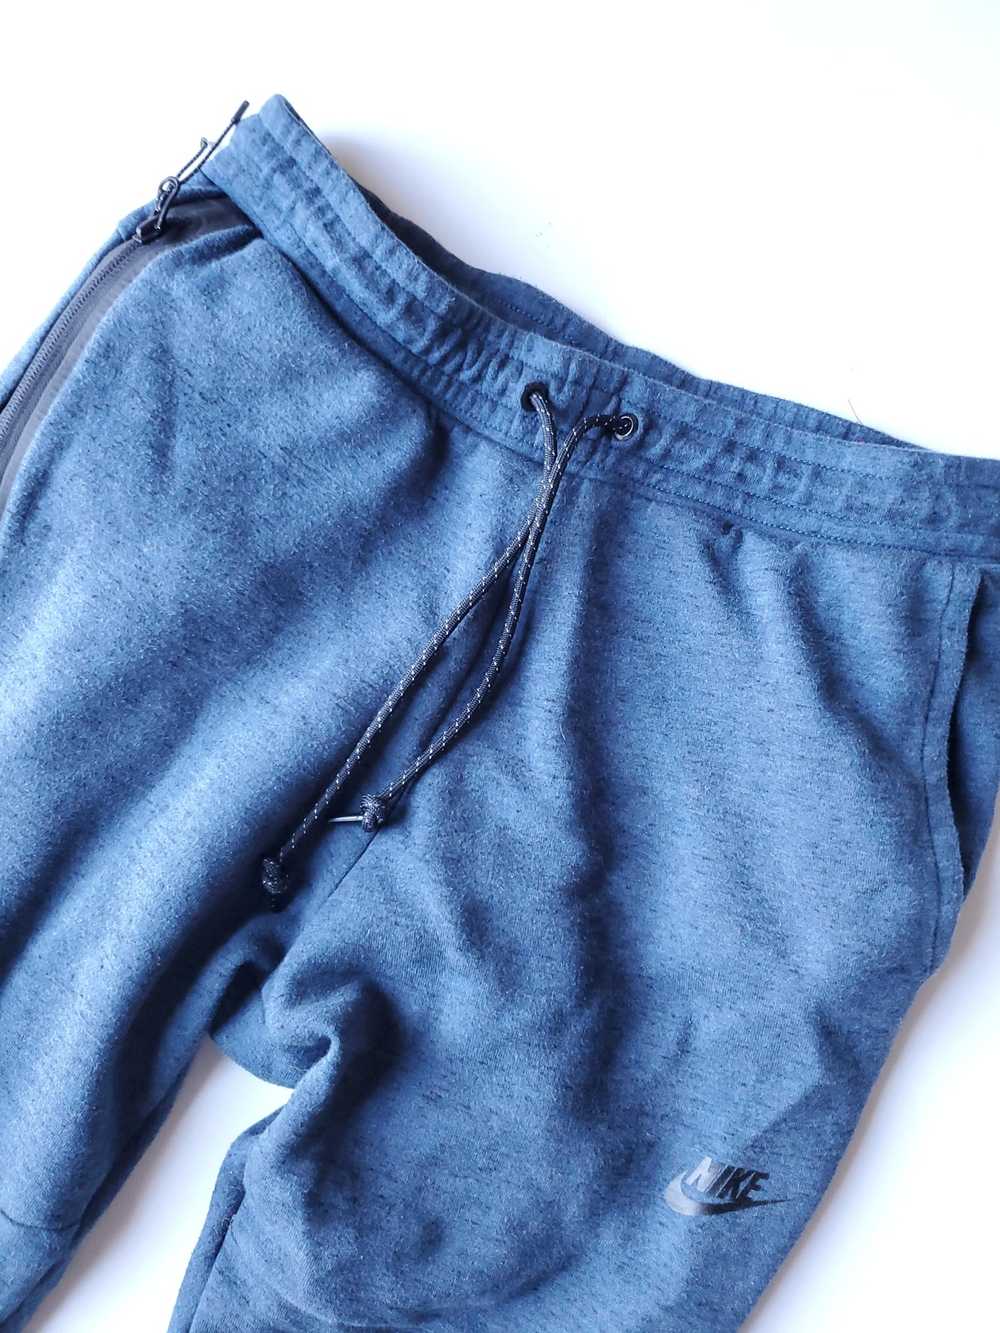 Nike Nike Sportswear Tech Fleece Blue Pants Sz Me… - image 3